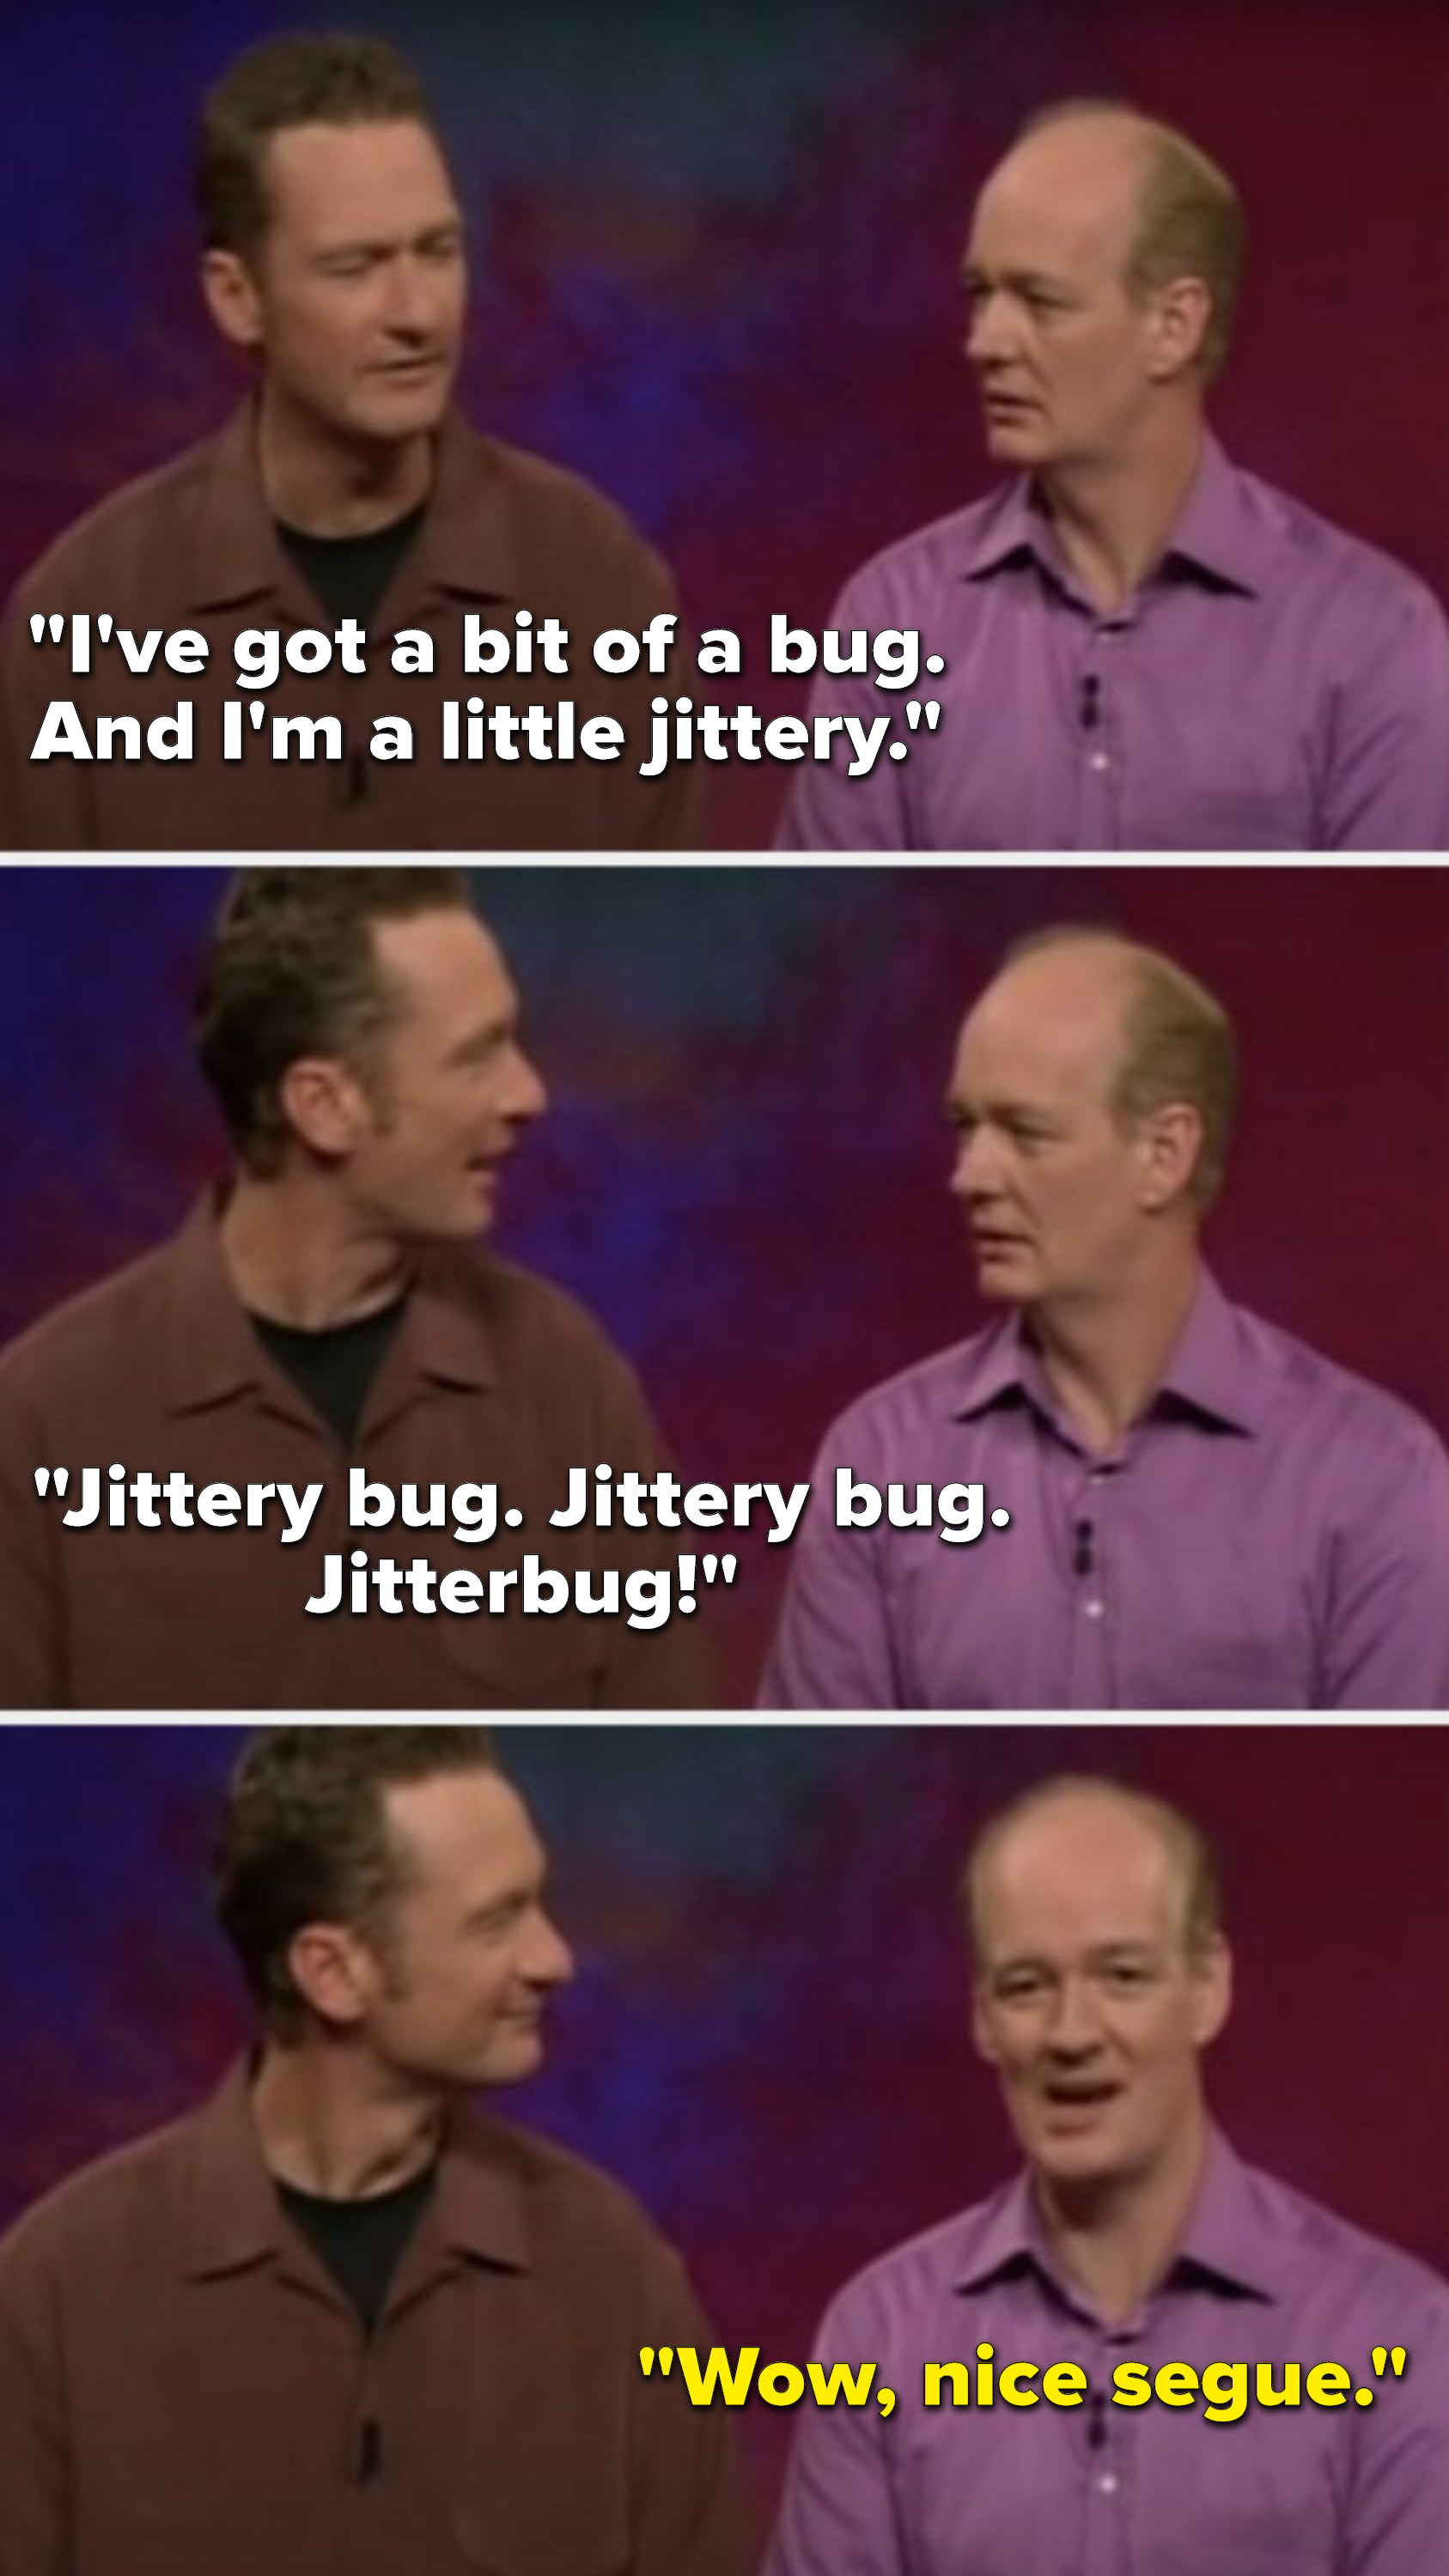 Stiles says, &quot;I&#x27;ve got a bit of a bug, and I&#x27;m a little jittery, jittery bug, jittery bug, jitterbug,&quot; and Mochrie says, &quot;Wow, nice segue&quot;